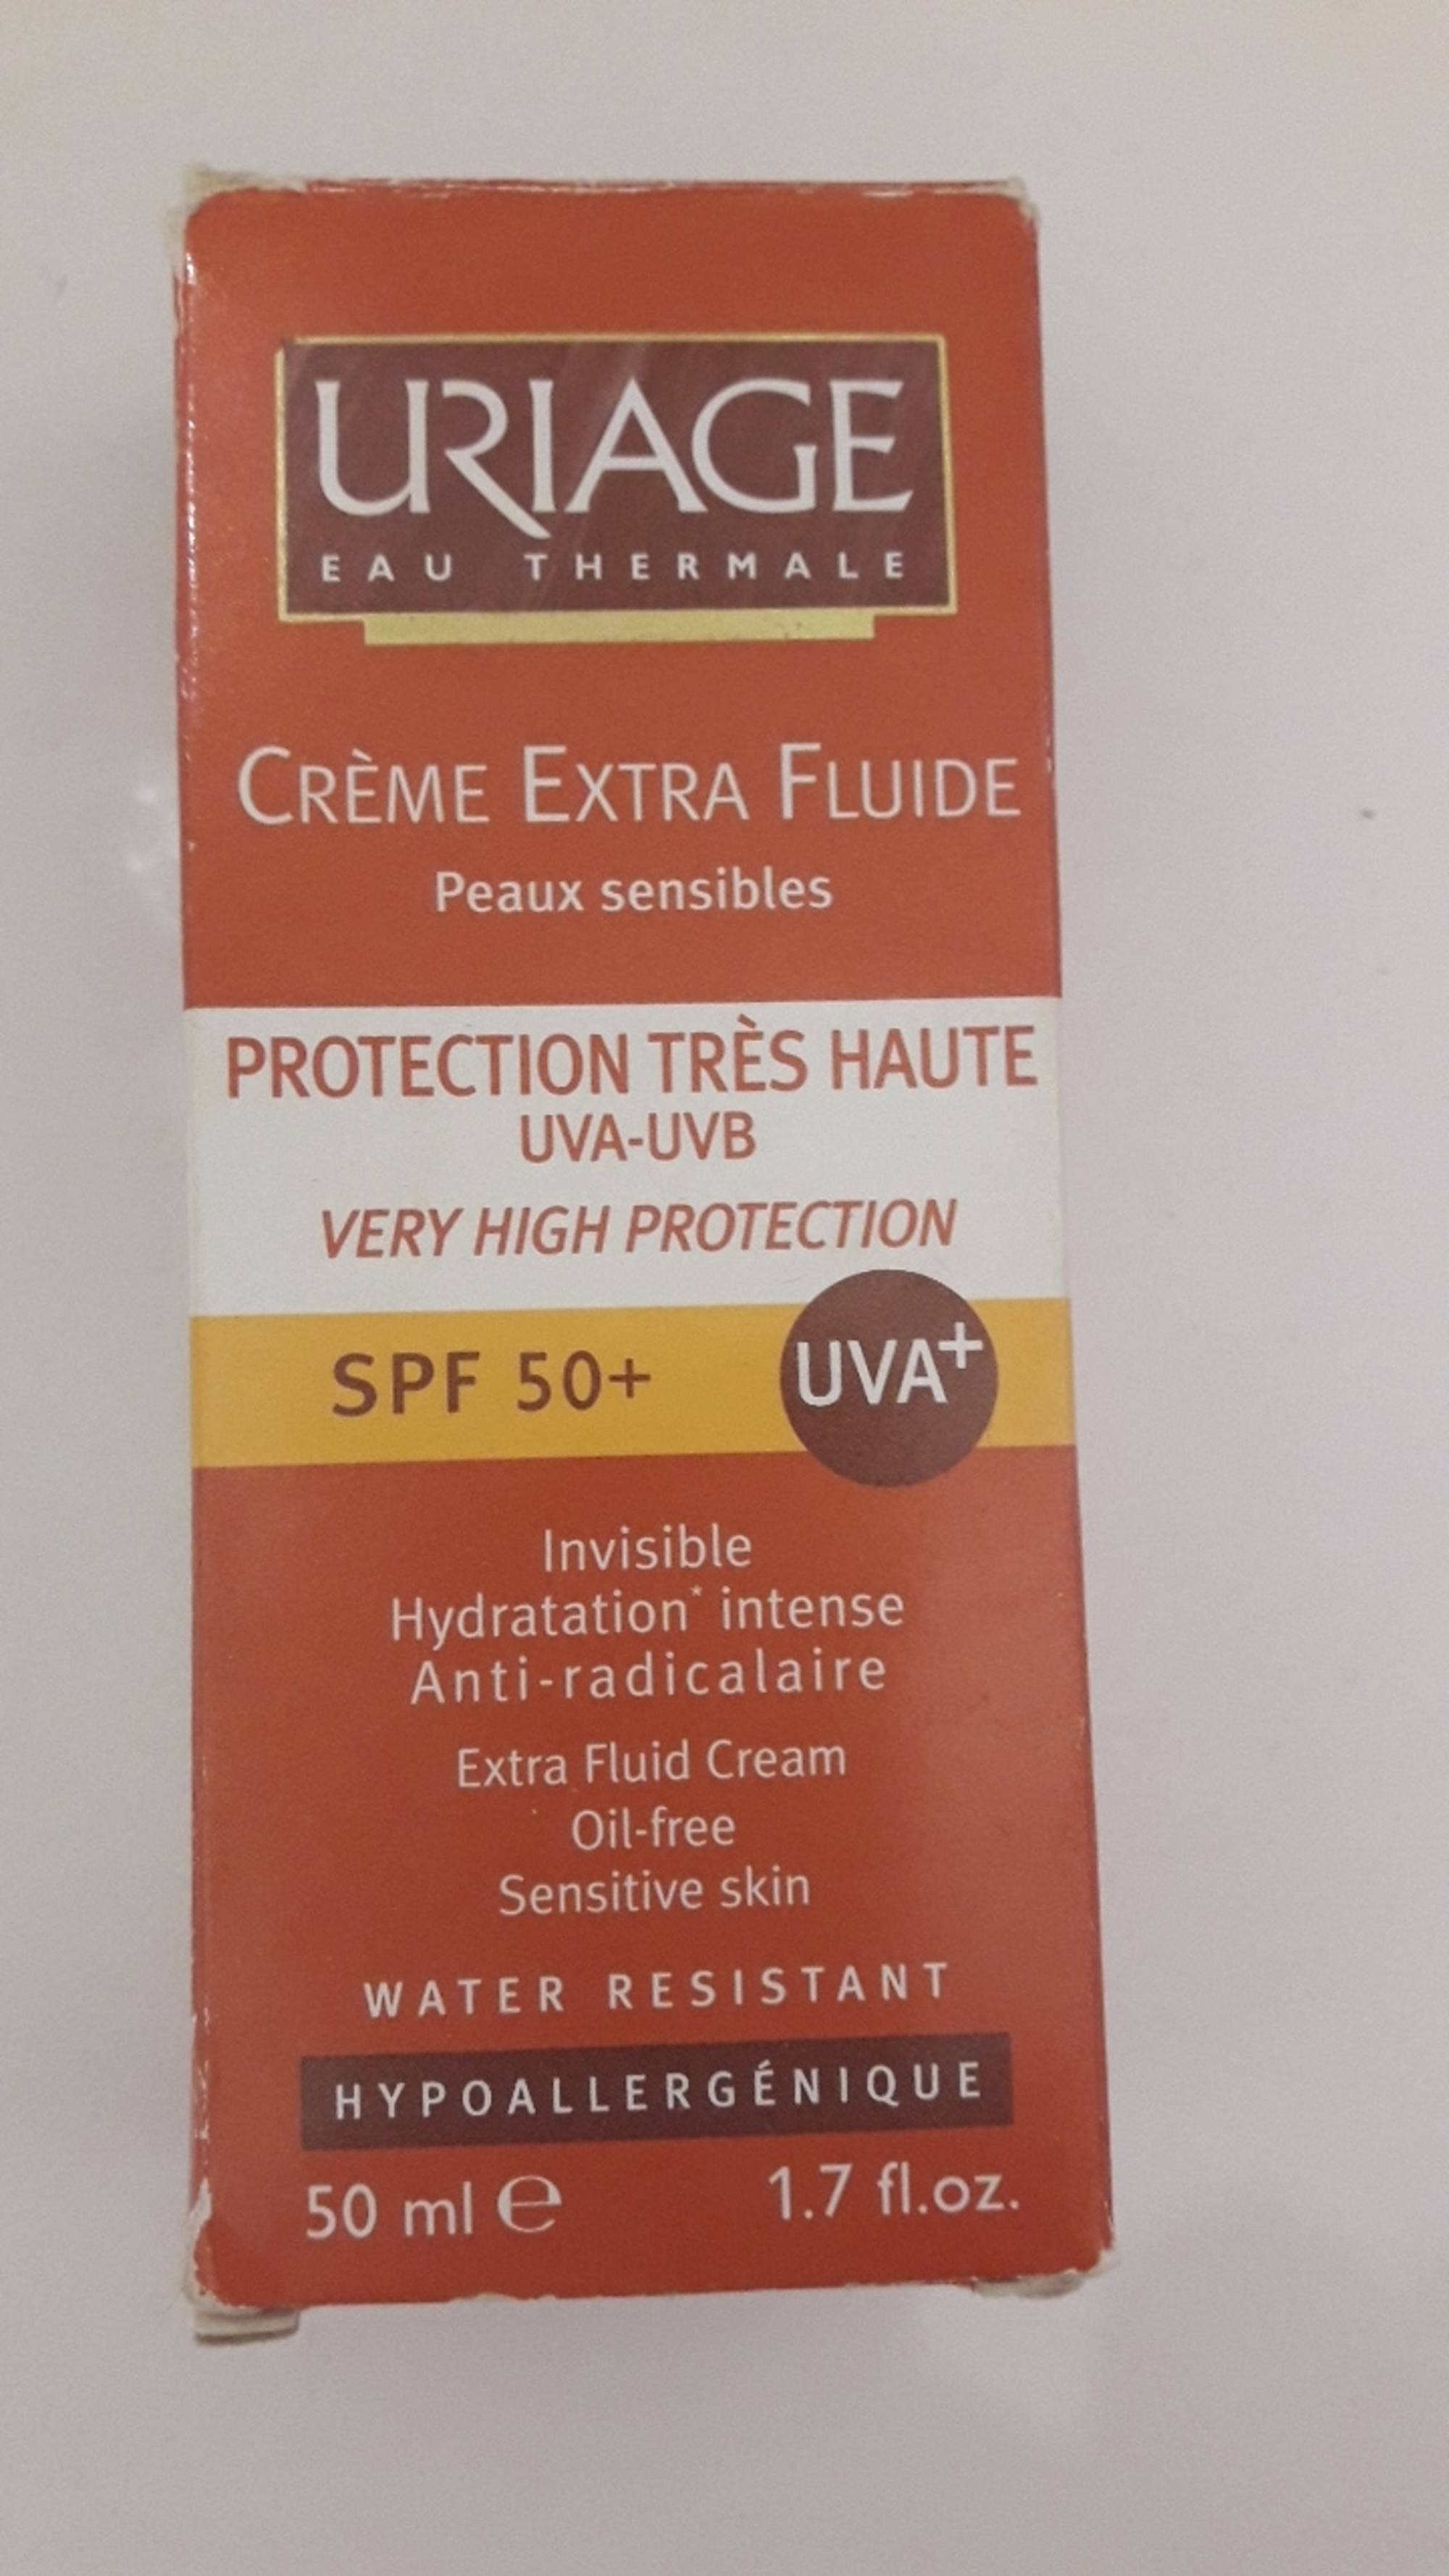 URIAGE - Crème extra fluide spf 50+